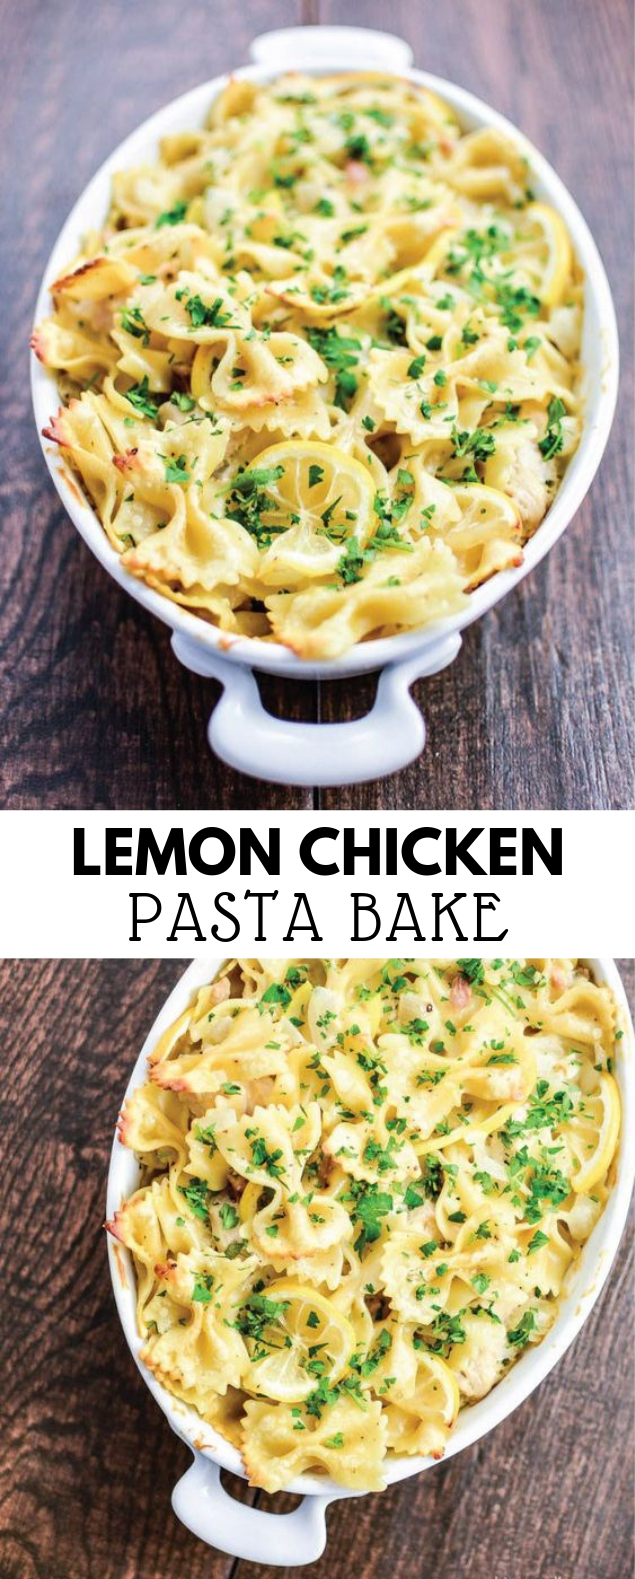 Lemon Chicken Pasta Bake #Pasta #Dinner